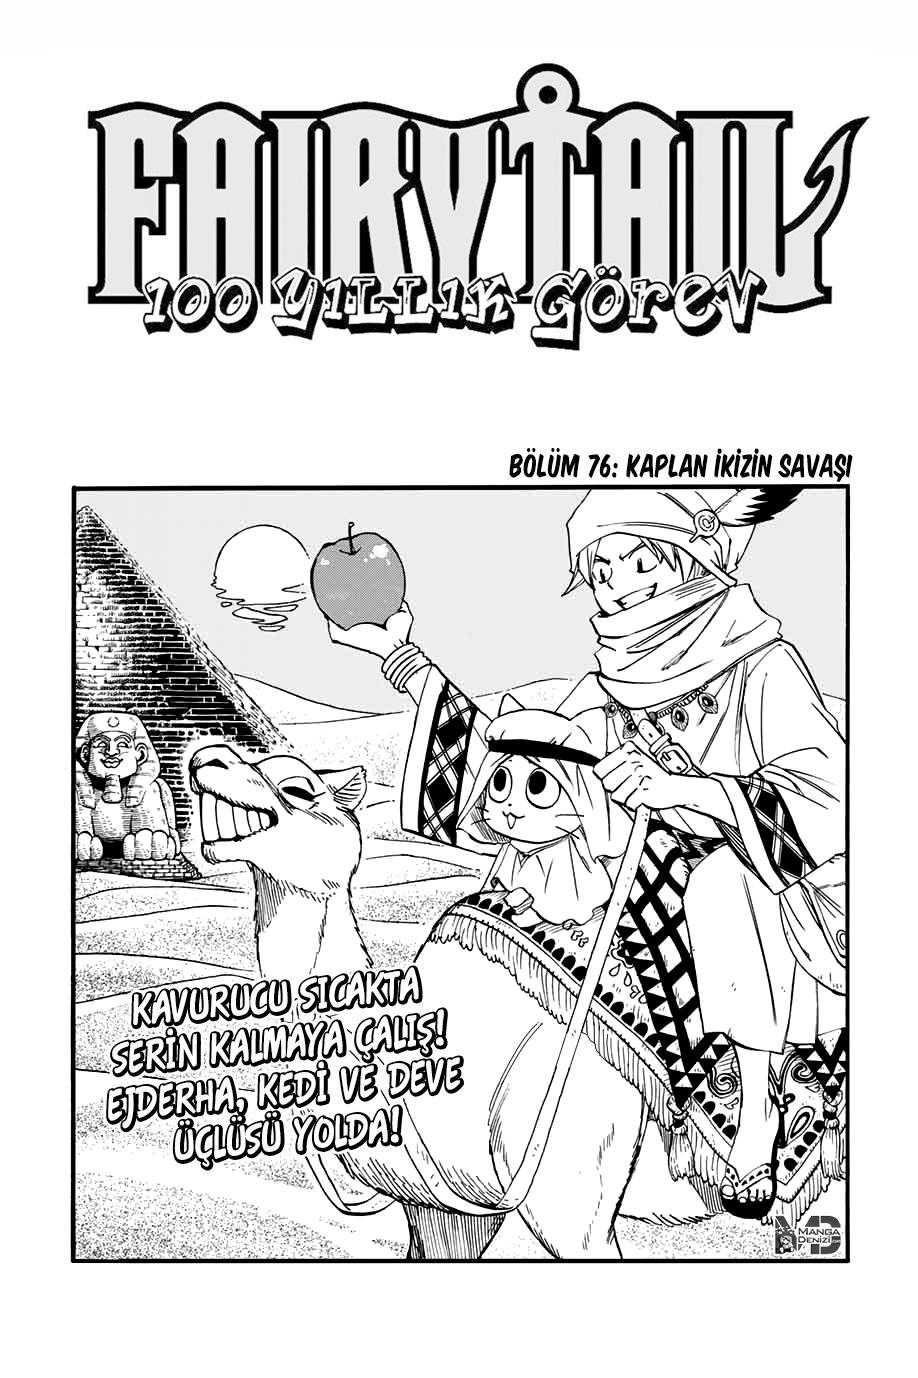 Fairy Tail: 100 Years Quest mangasının 076 bölümünün 2. sayfasını okuyorsunuz.